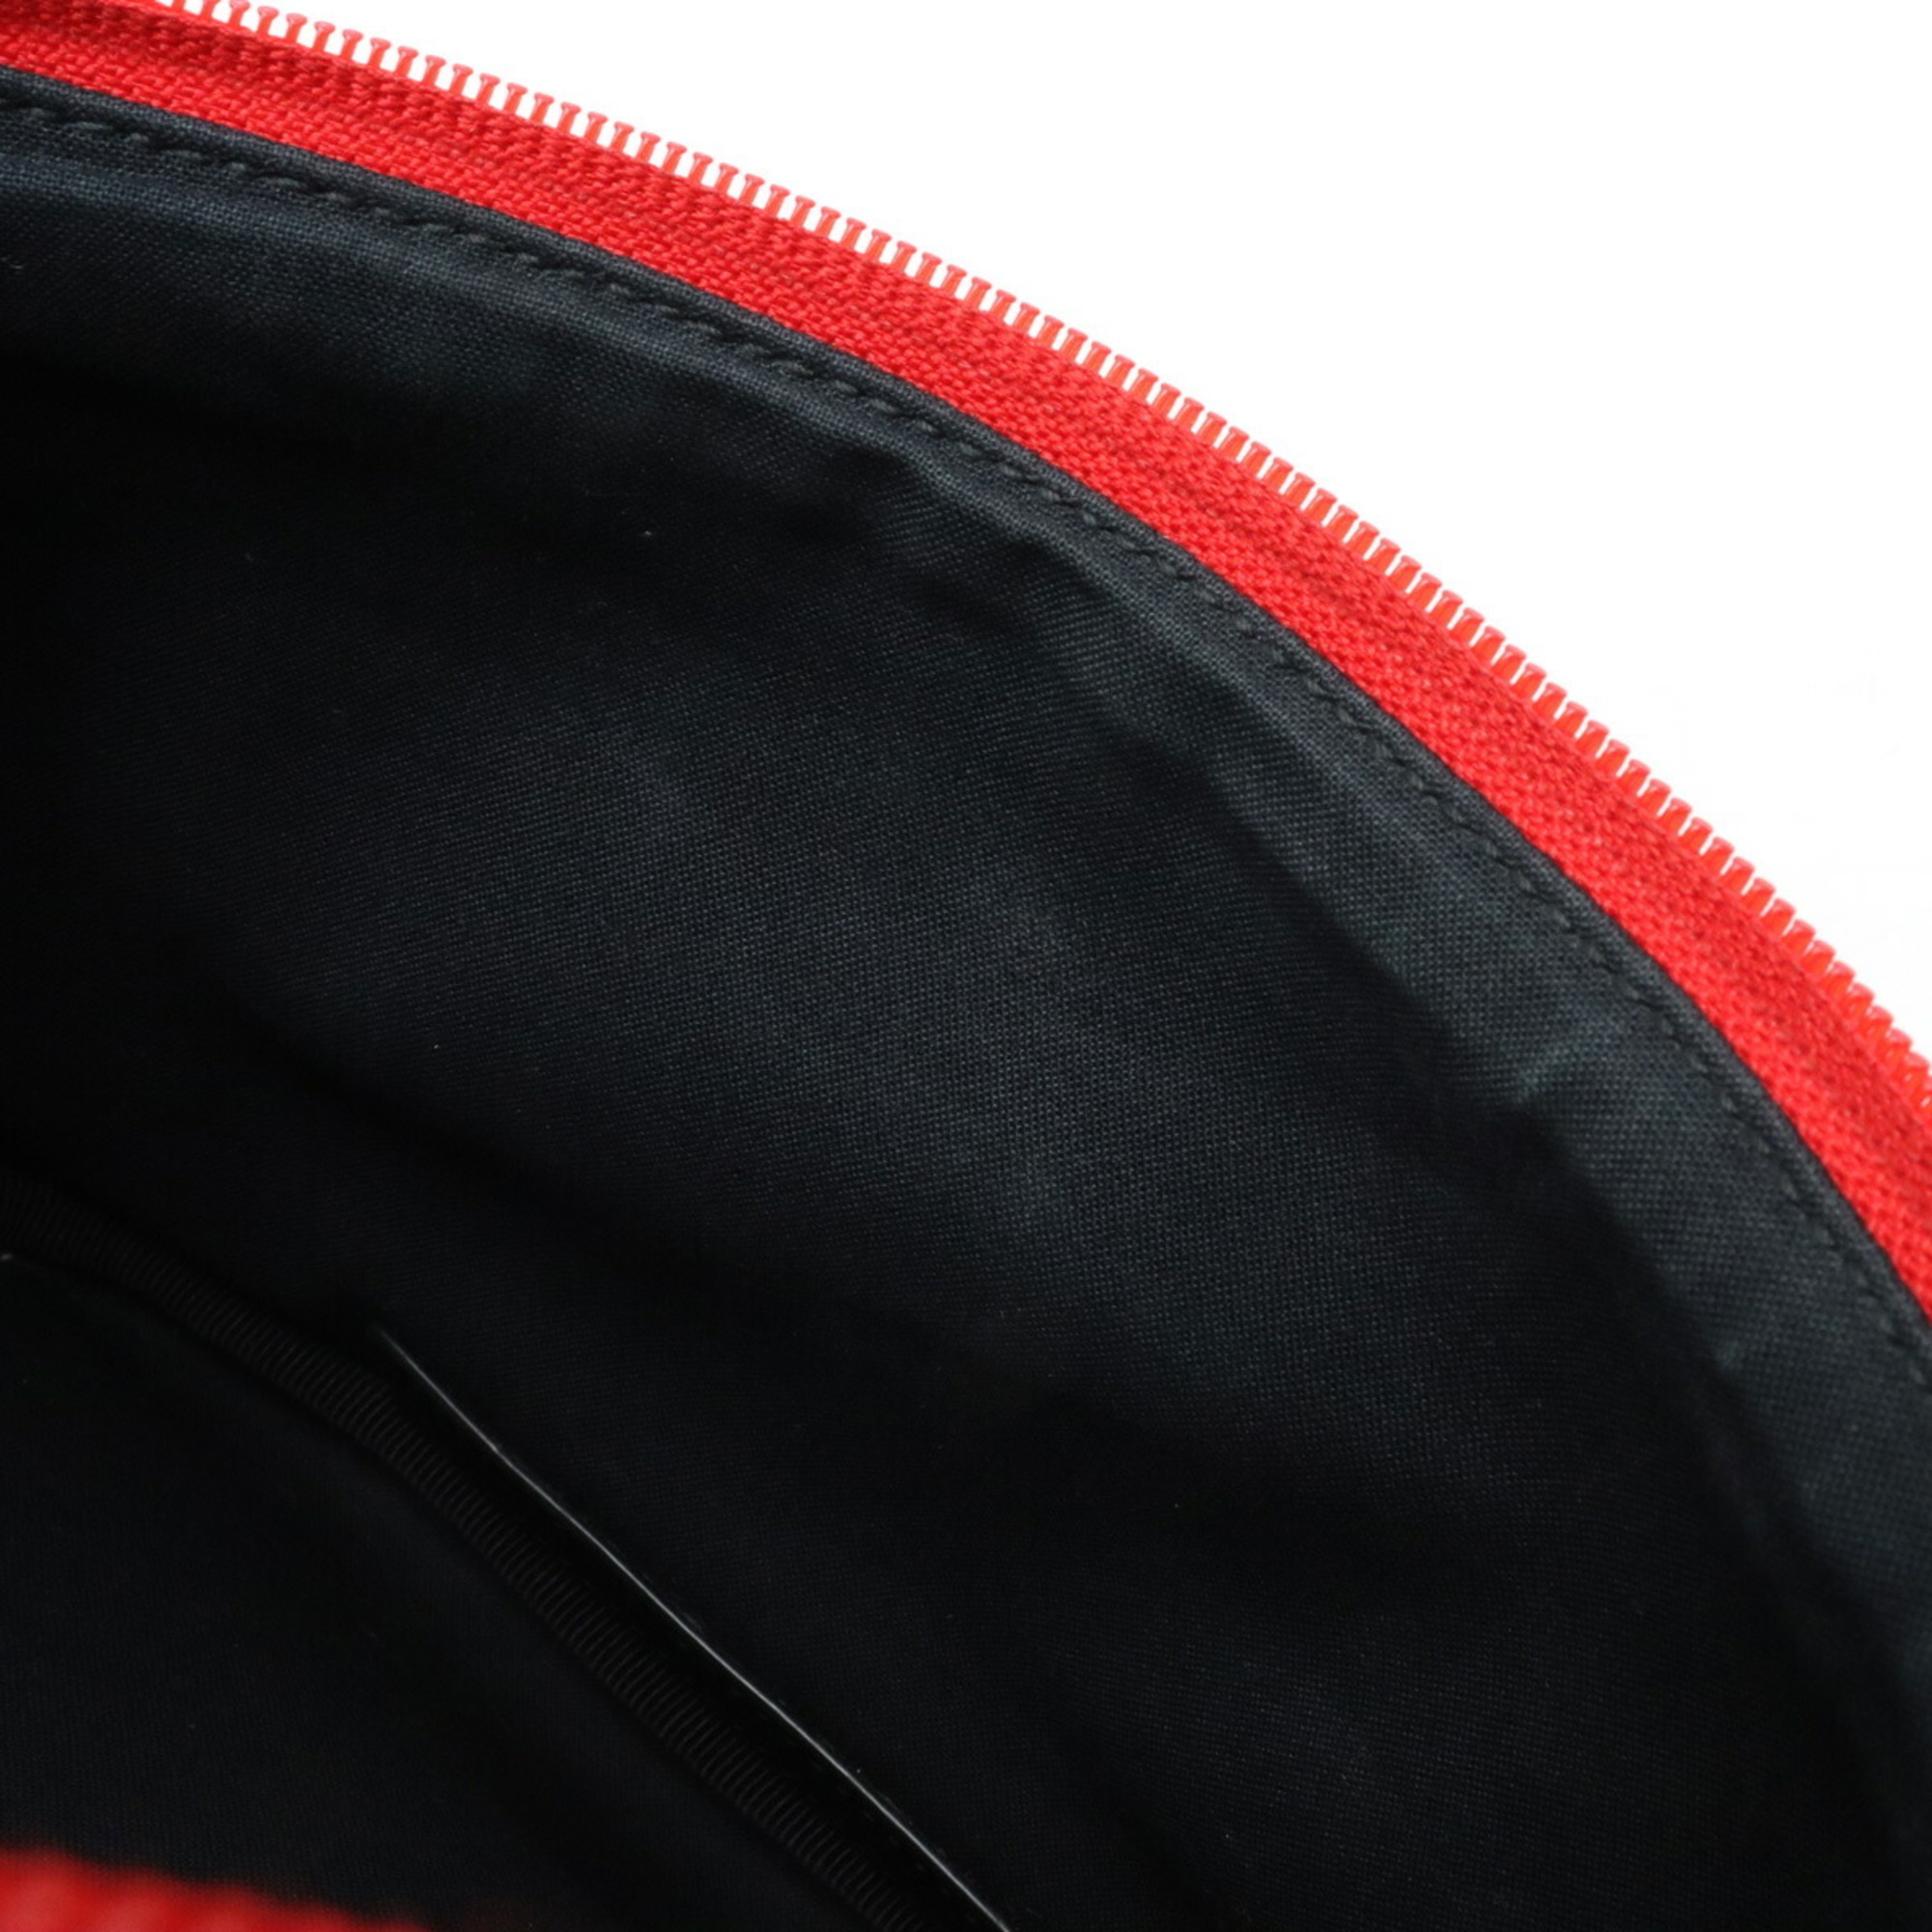 BALENCIAGA Balenciaga patch belt bag waist pouch body hip nylon canvas red 482389